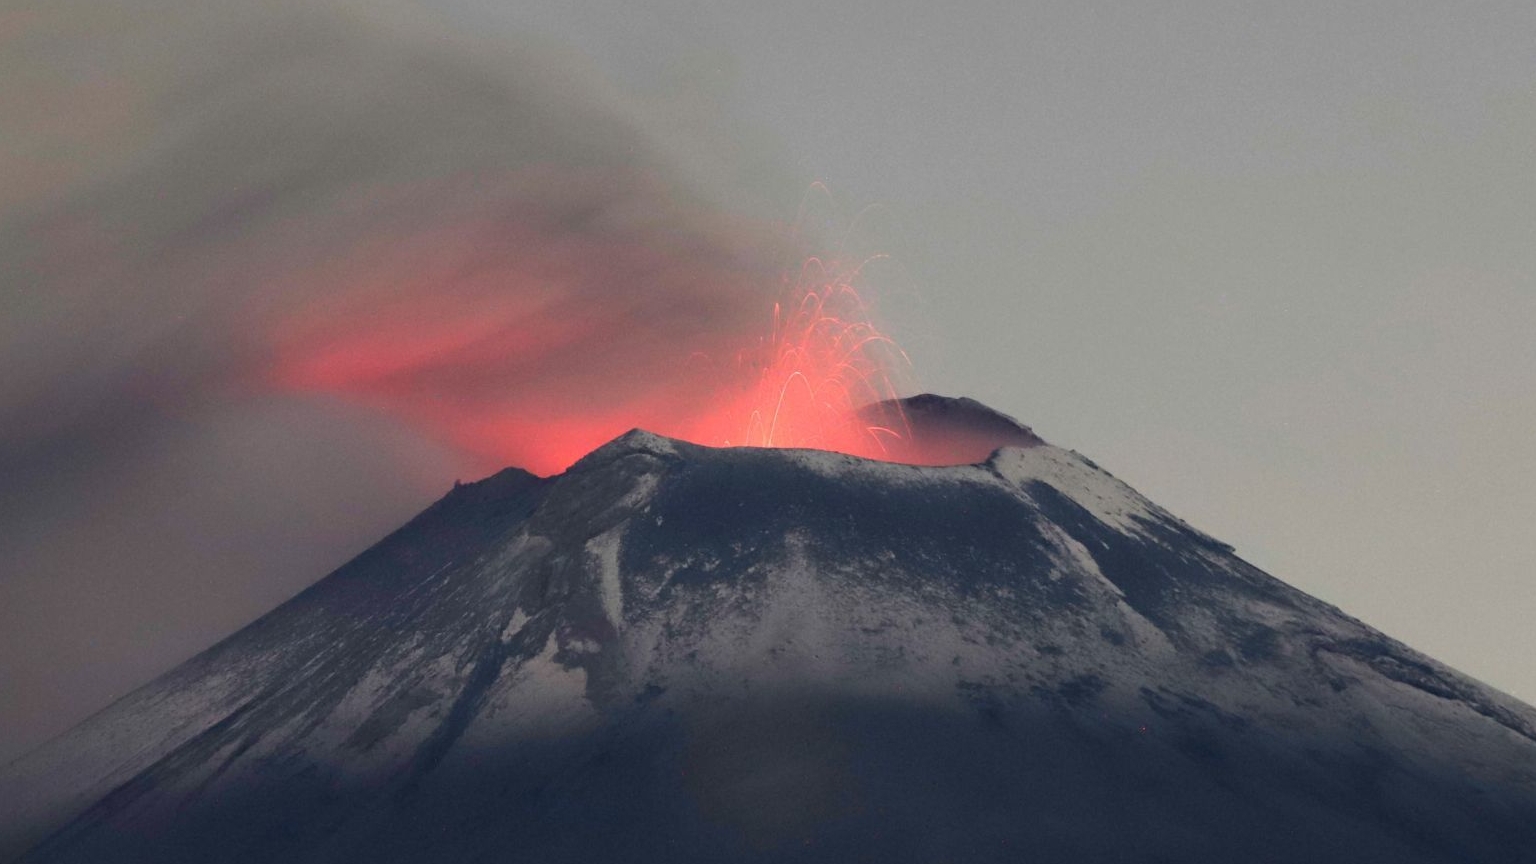 Volcán Popocatépetl hoy 28 de mayo: Sumaron 24 horas sin explosiones, pero continuará ligera caída de ceniza 